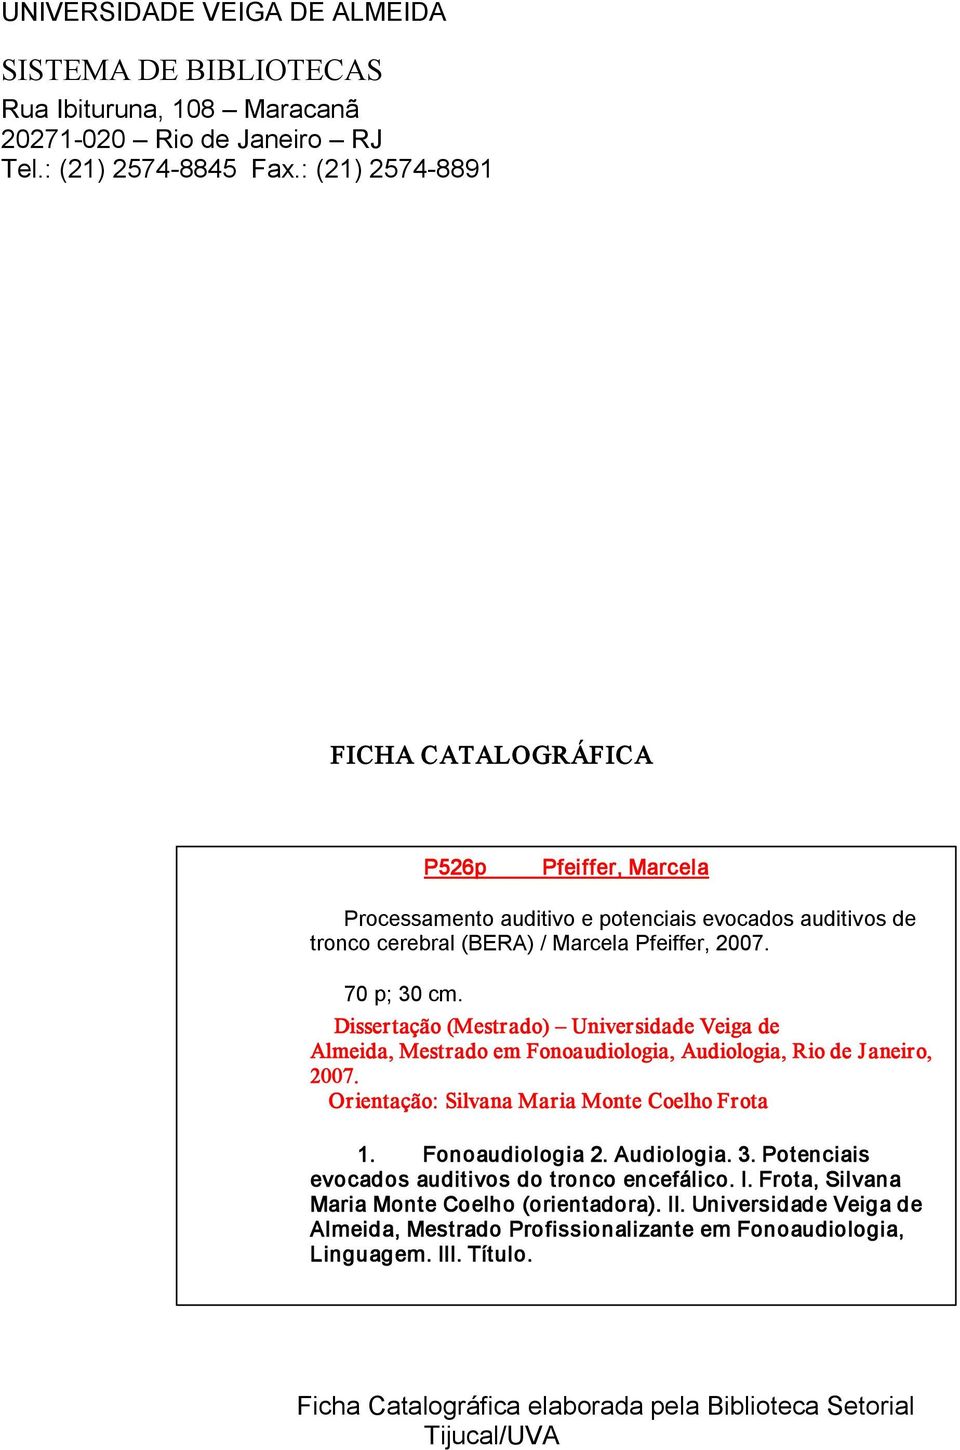 Dissertação (Mestrado) Universidade Veiga de Almeida, Mestrado em Fonoaudiologia, Audiologia, Rio de Janeiro, 2007. Orientação: Silvana Maria Monte Coelho Frota 1. Fonoaudiologia 2. Audiologia. 3.